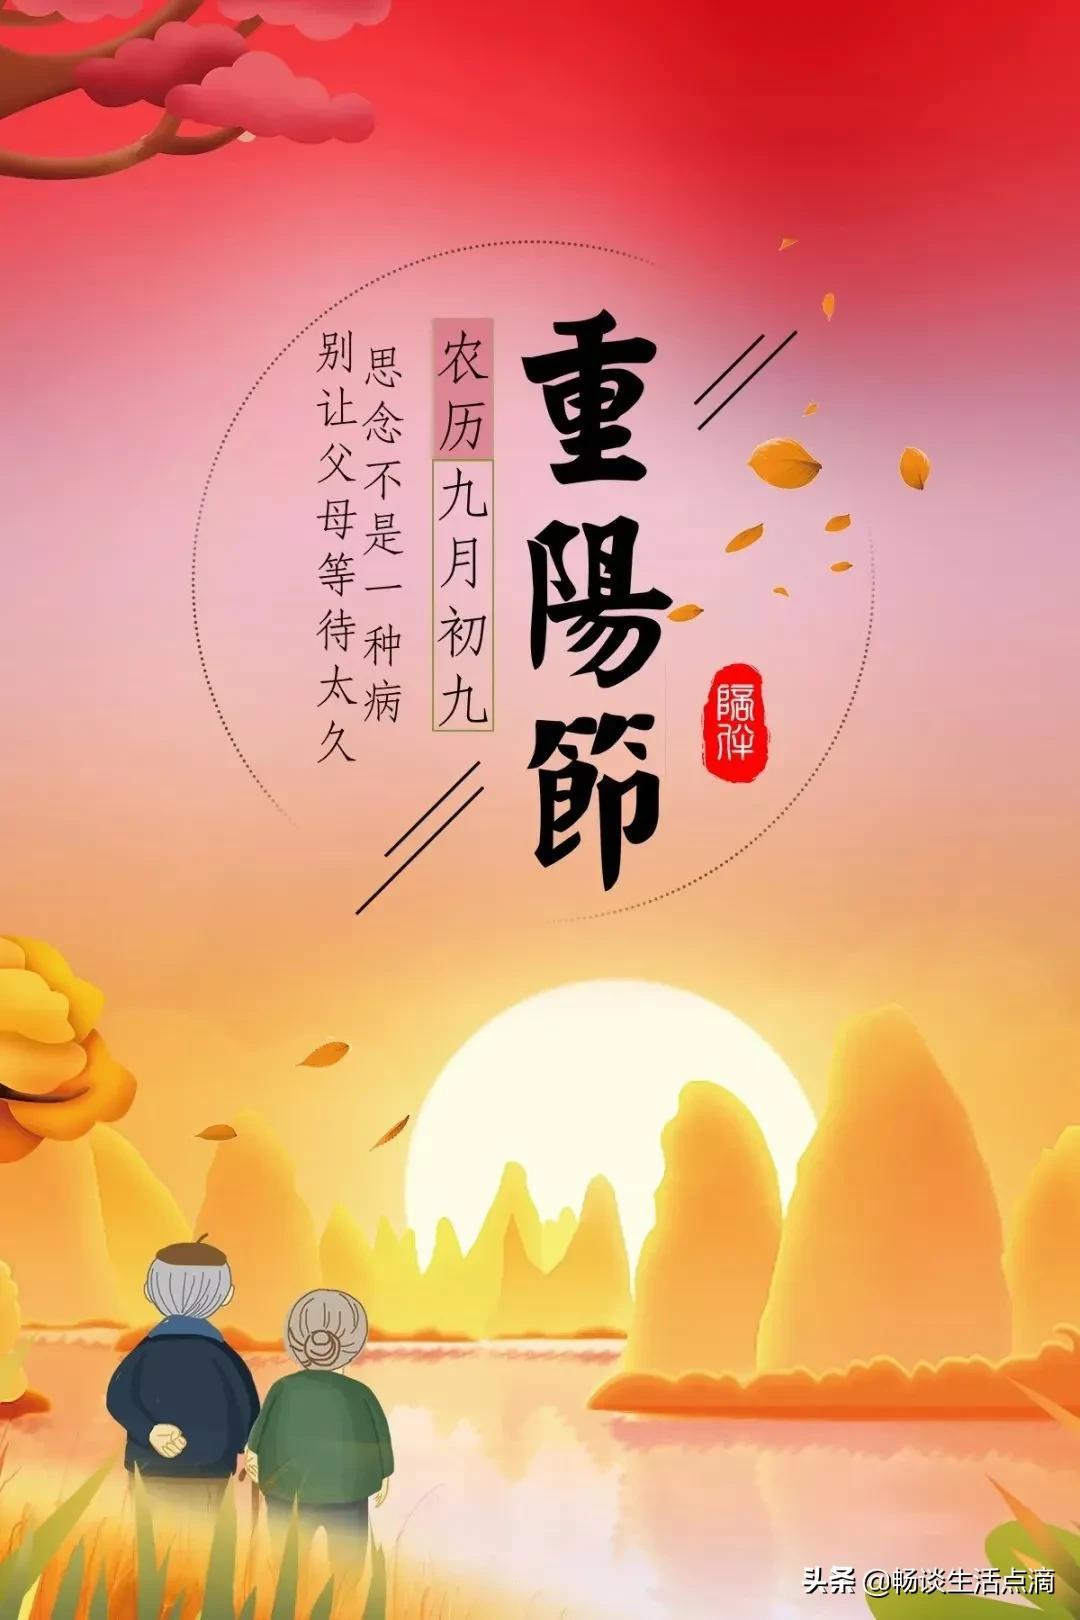 九月初九重阳节，天气晴朗有啥预兆？看看老祖宗留下的谚语